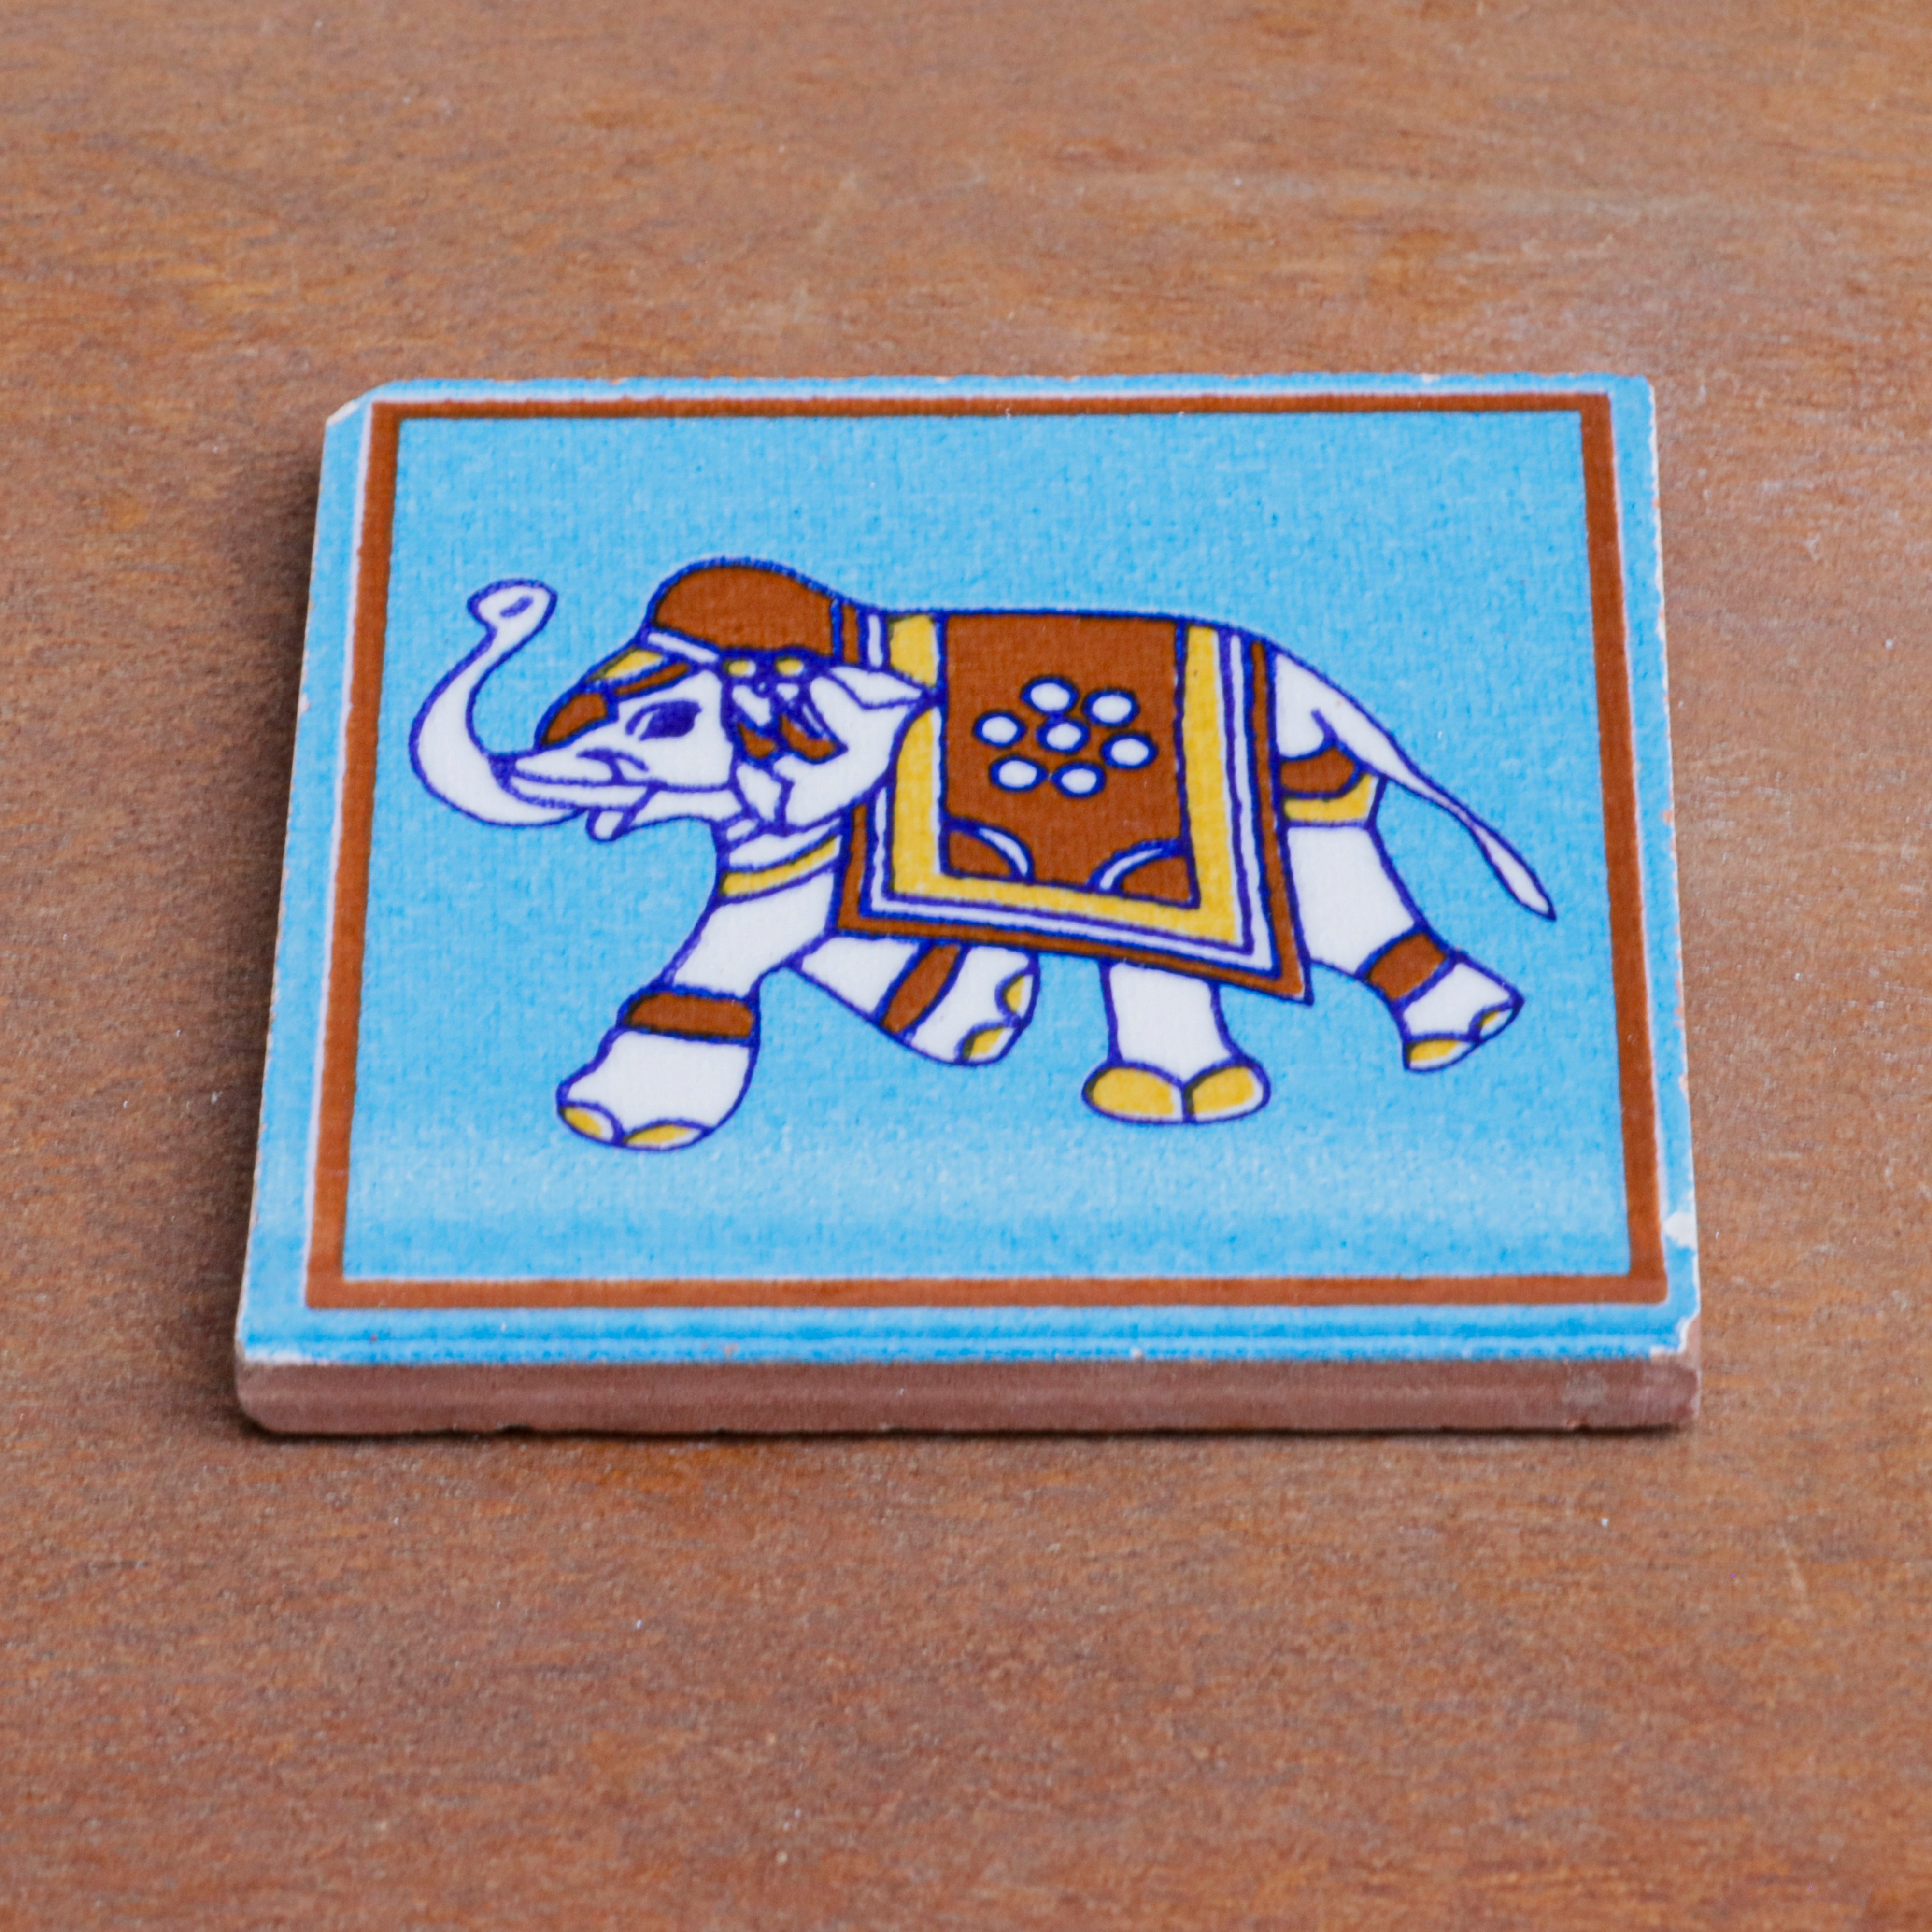 Premium Traditional Elephant Designed Ceramic Square Tile Set of 2 Ceramic Tile